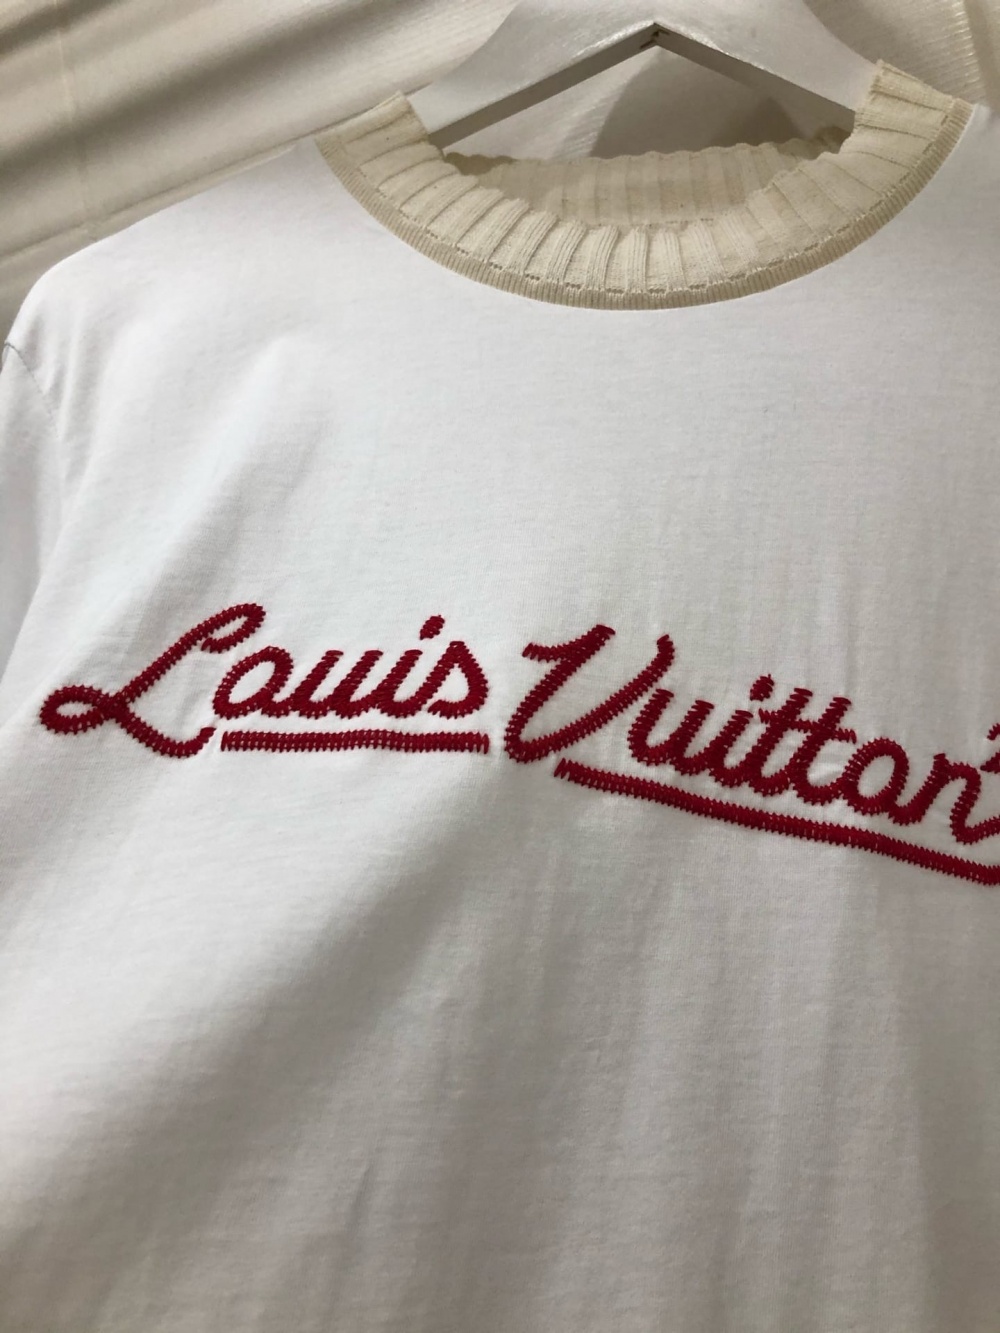 Футболка Lous Vuitton. Размер L-XL.